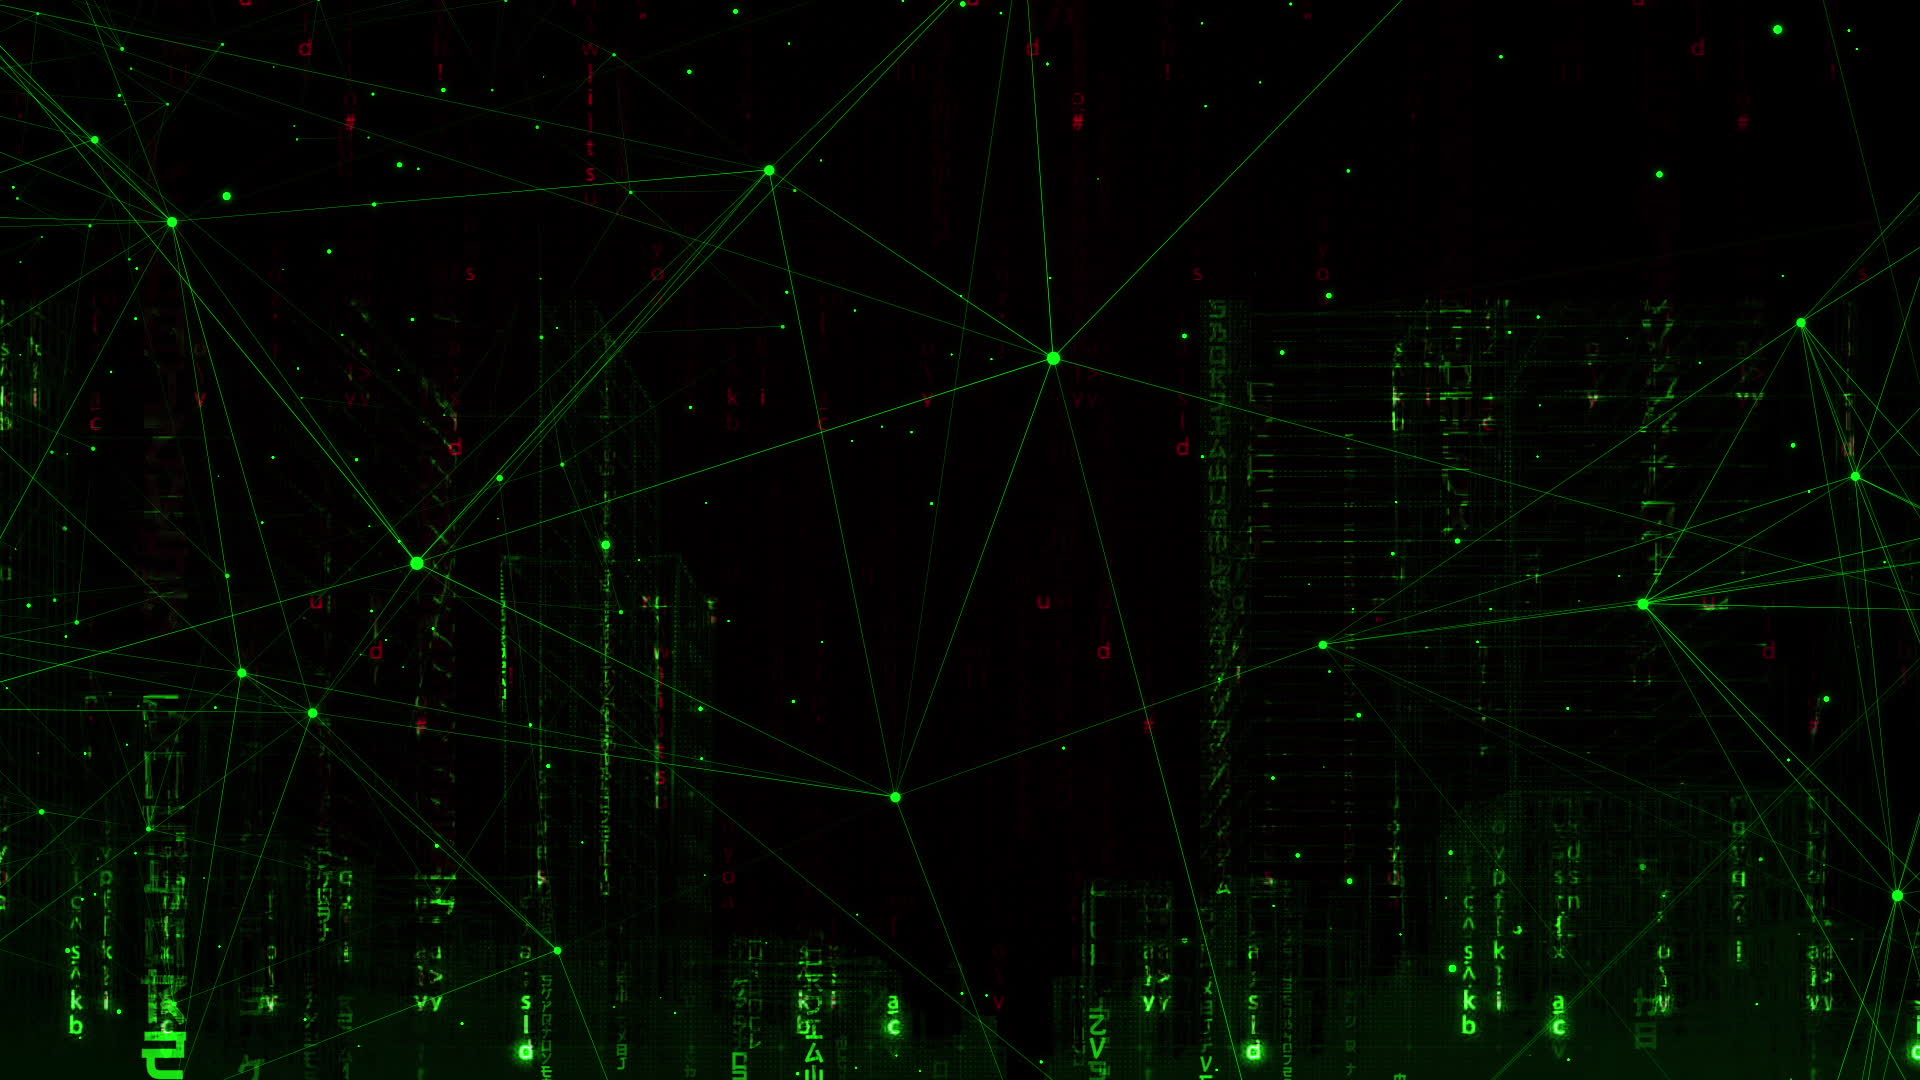 Với mạng xanh và mã Hacker Code 2232403 Video chứa đựng, bạn sẽ được thấy những đường kết nối mạng hoành tráng cùng với những điểm mã huyền bí. Đây là một hình ảnh đầy khoa học và bí ẩn, mang lại cảm giác tò mò và hứng thú cho người xem. Hãy cùng khám phá hình ảnh và đắm chìm trong không gian hacking đầy bí ẩn này!